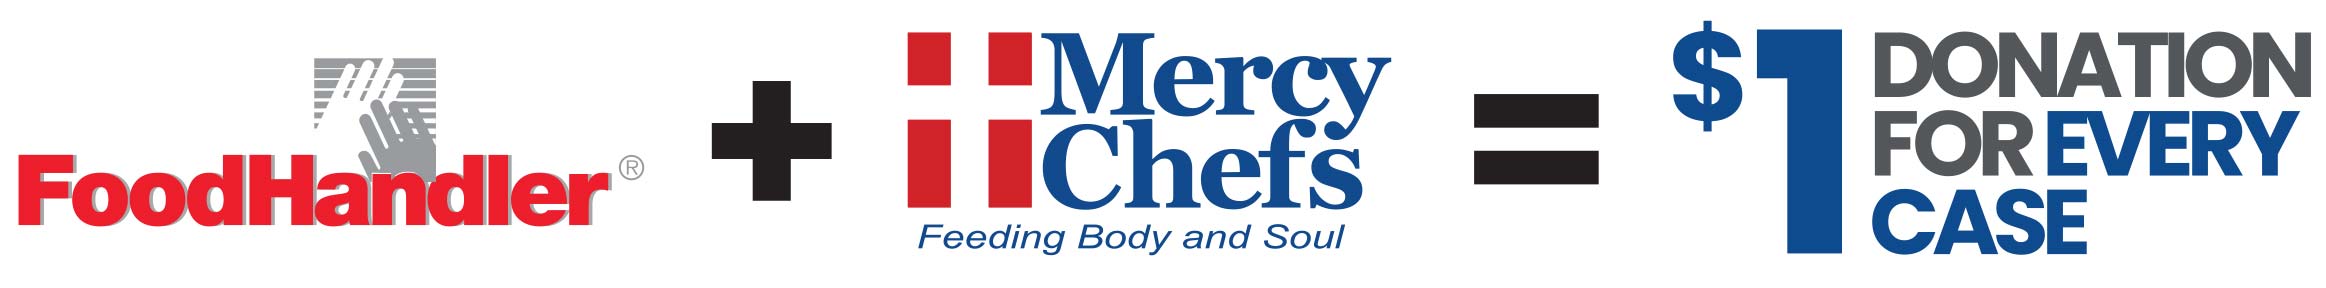 Mercy Chefs Partnership